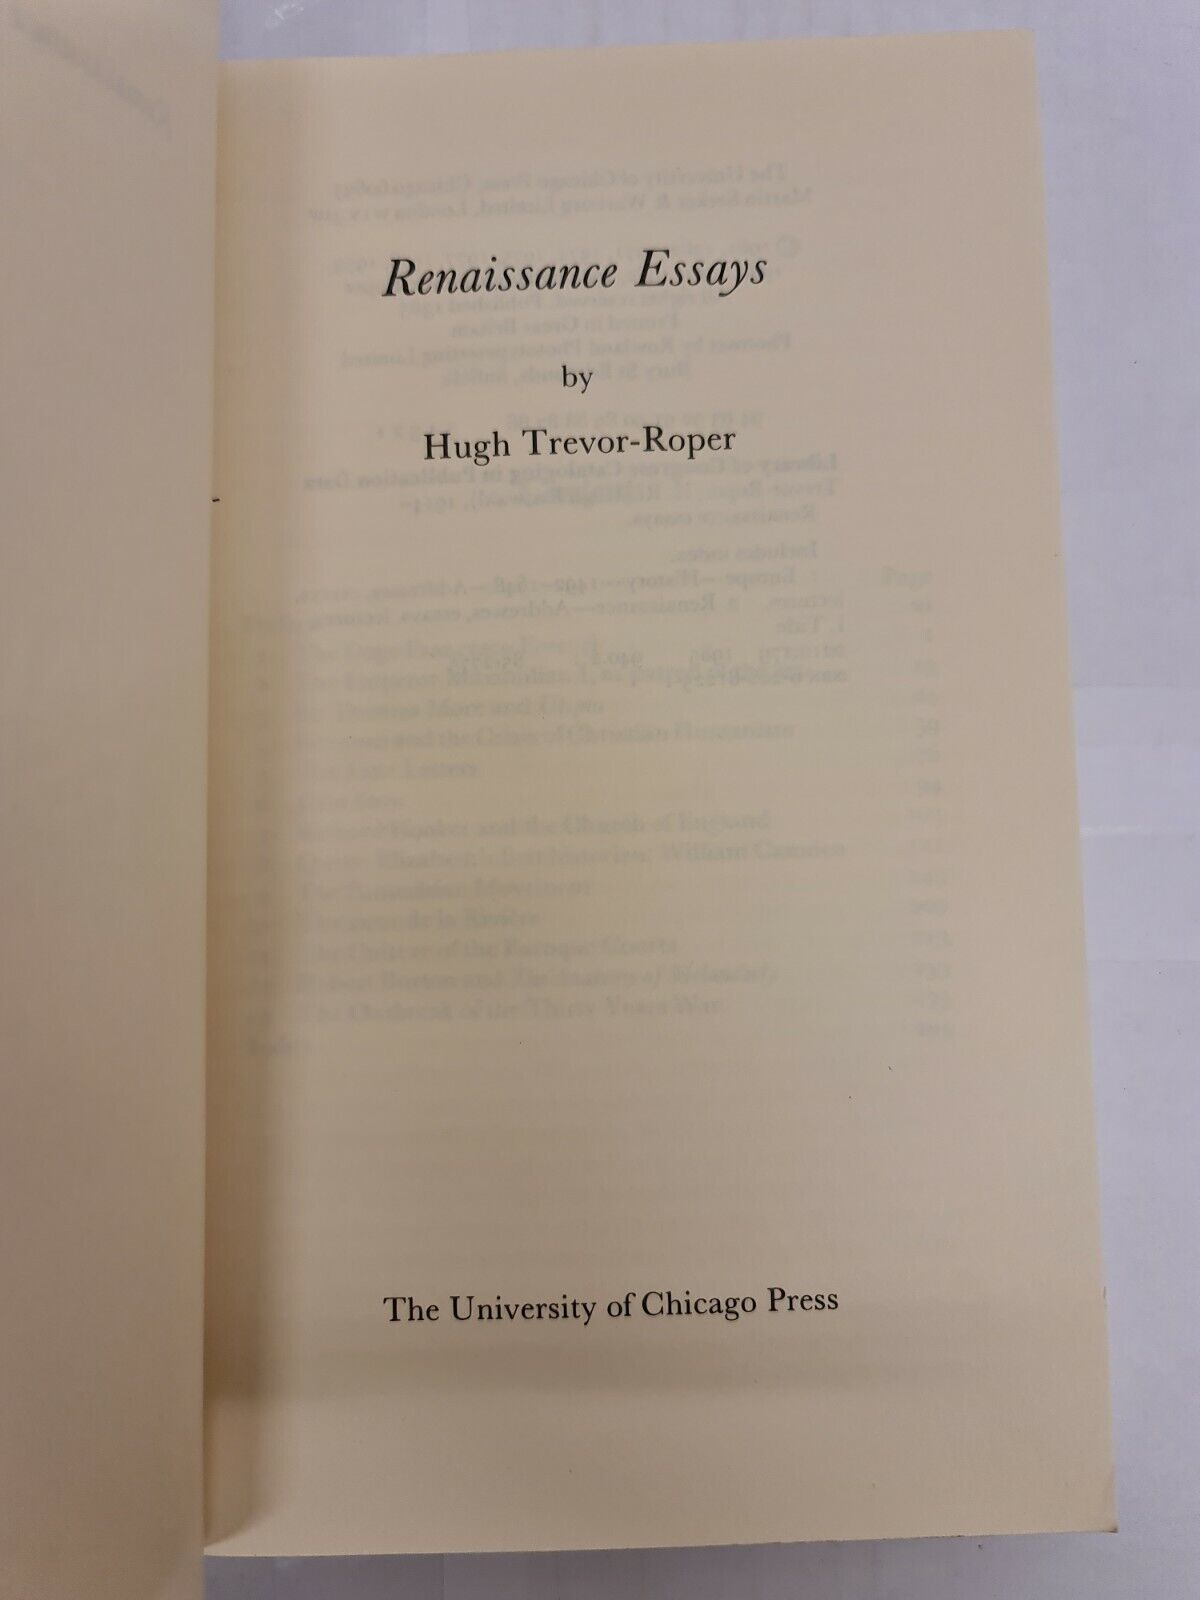 Renaissance Essays by Hugh Trevor-Roper (1989)